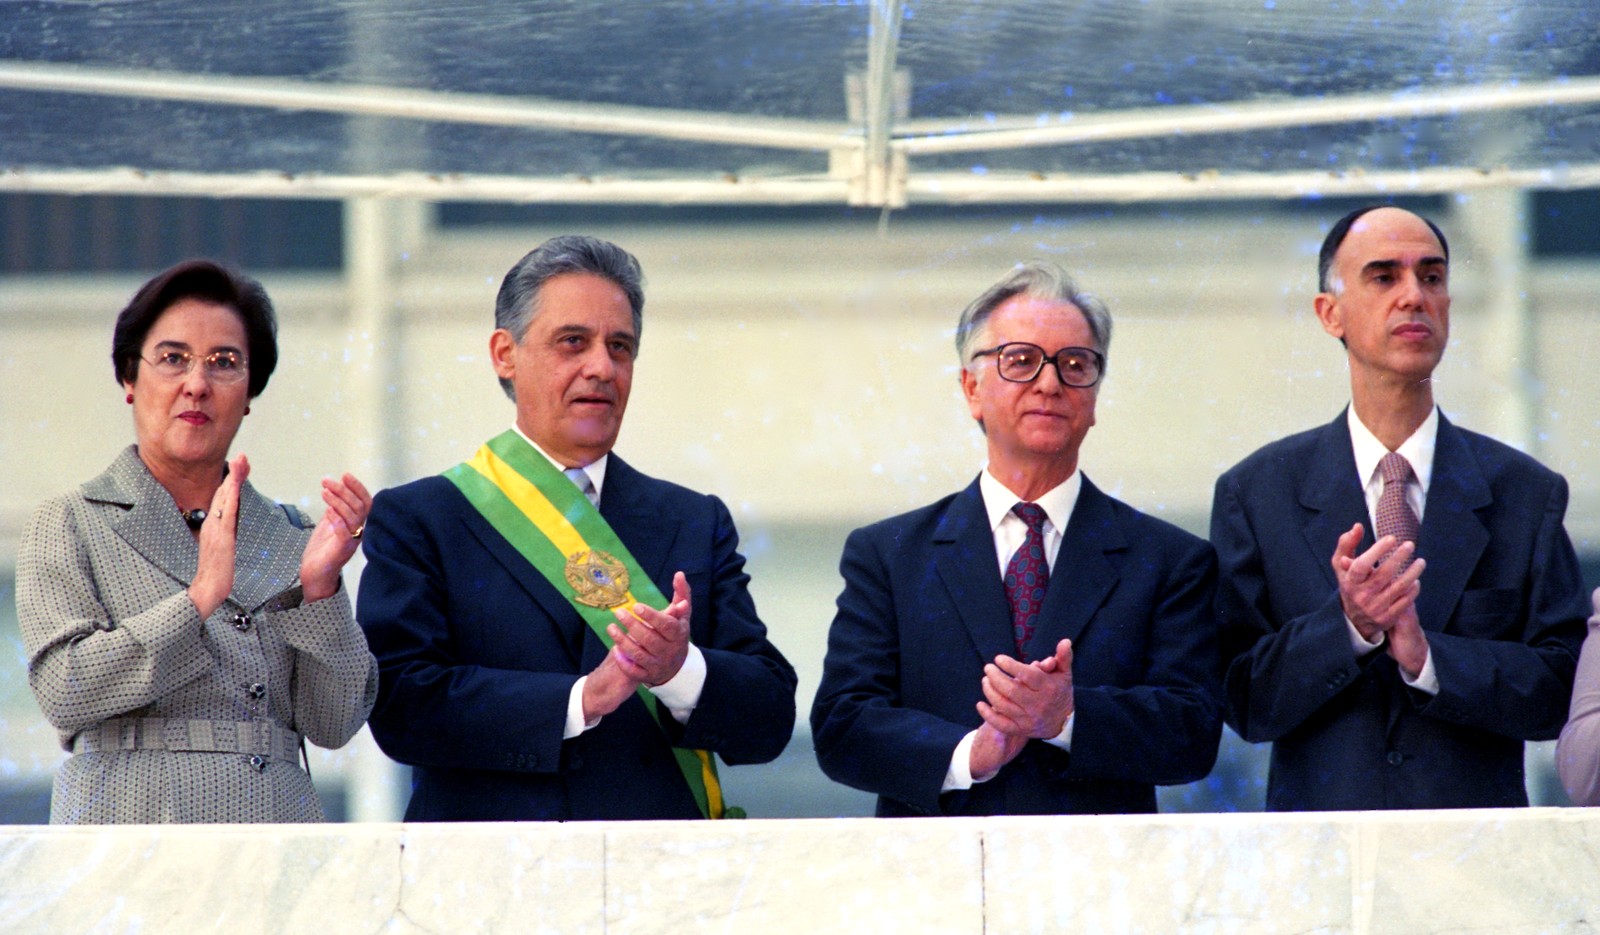 Ruth Cardoso foi a primeira-dama do Brasil ao lado de Fernando Henrique Cardoso nos dois mandatos — de 1995 a 2002 — Foto: Ivo Gonzalez/Agência O Globo/01/01/1995